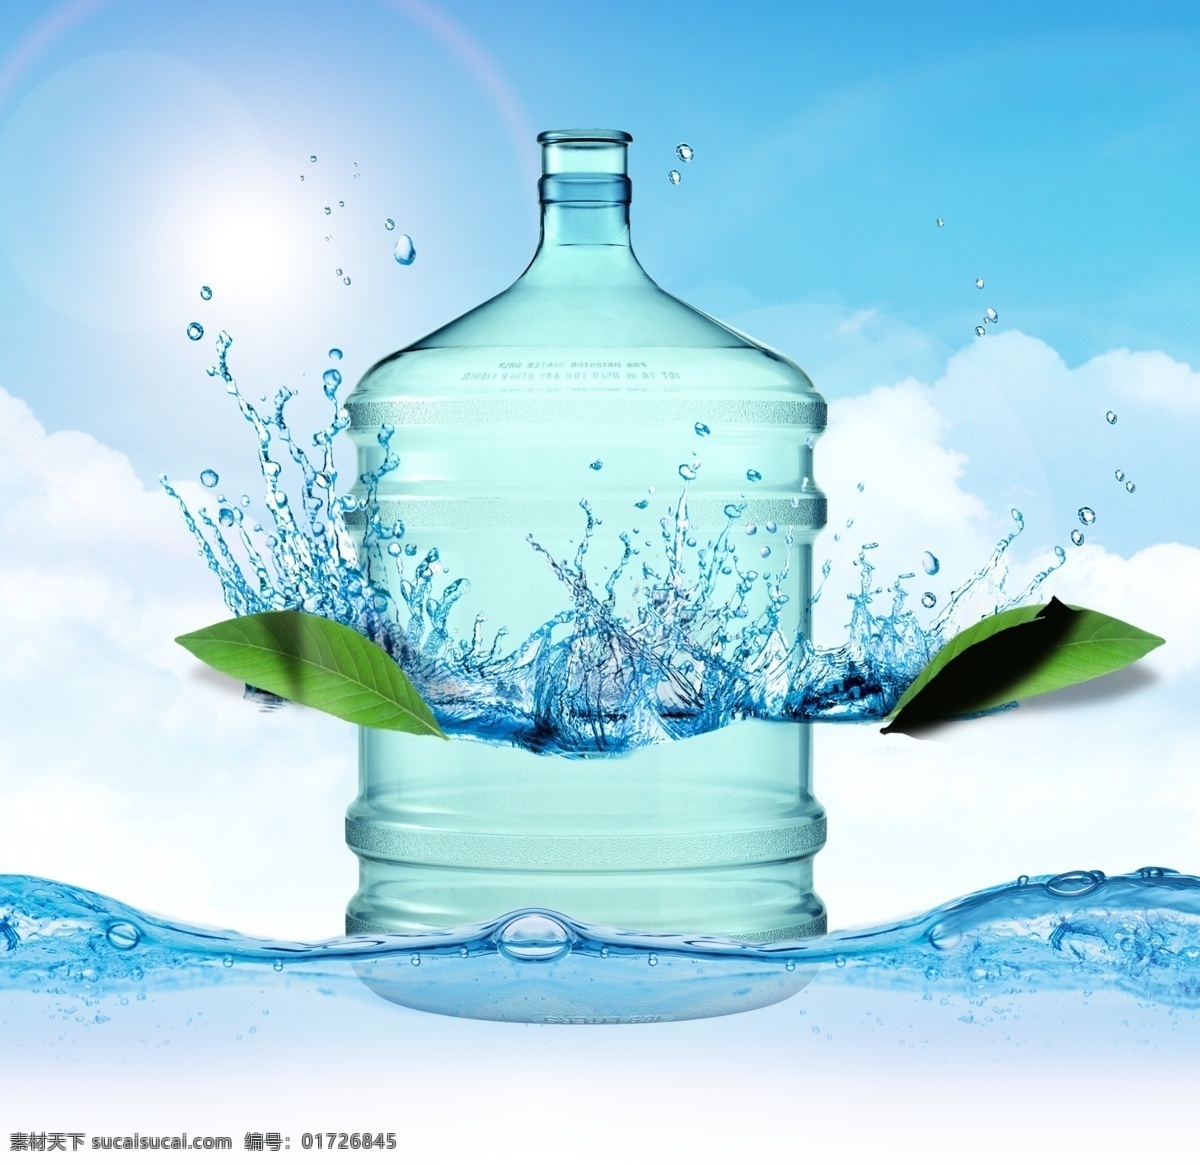 桶装水广告 模版下载 桶装水 水滴 矿泉水广告 南湾岛山泉 蓝色背景 灯箱设计 源文件